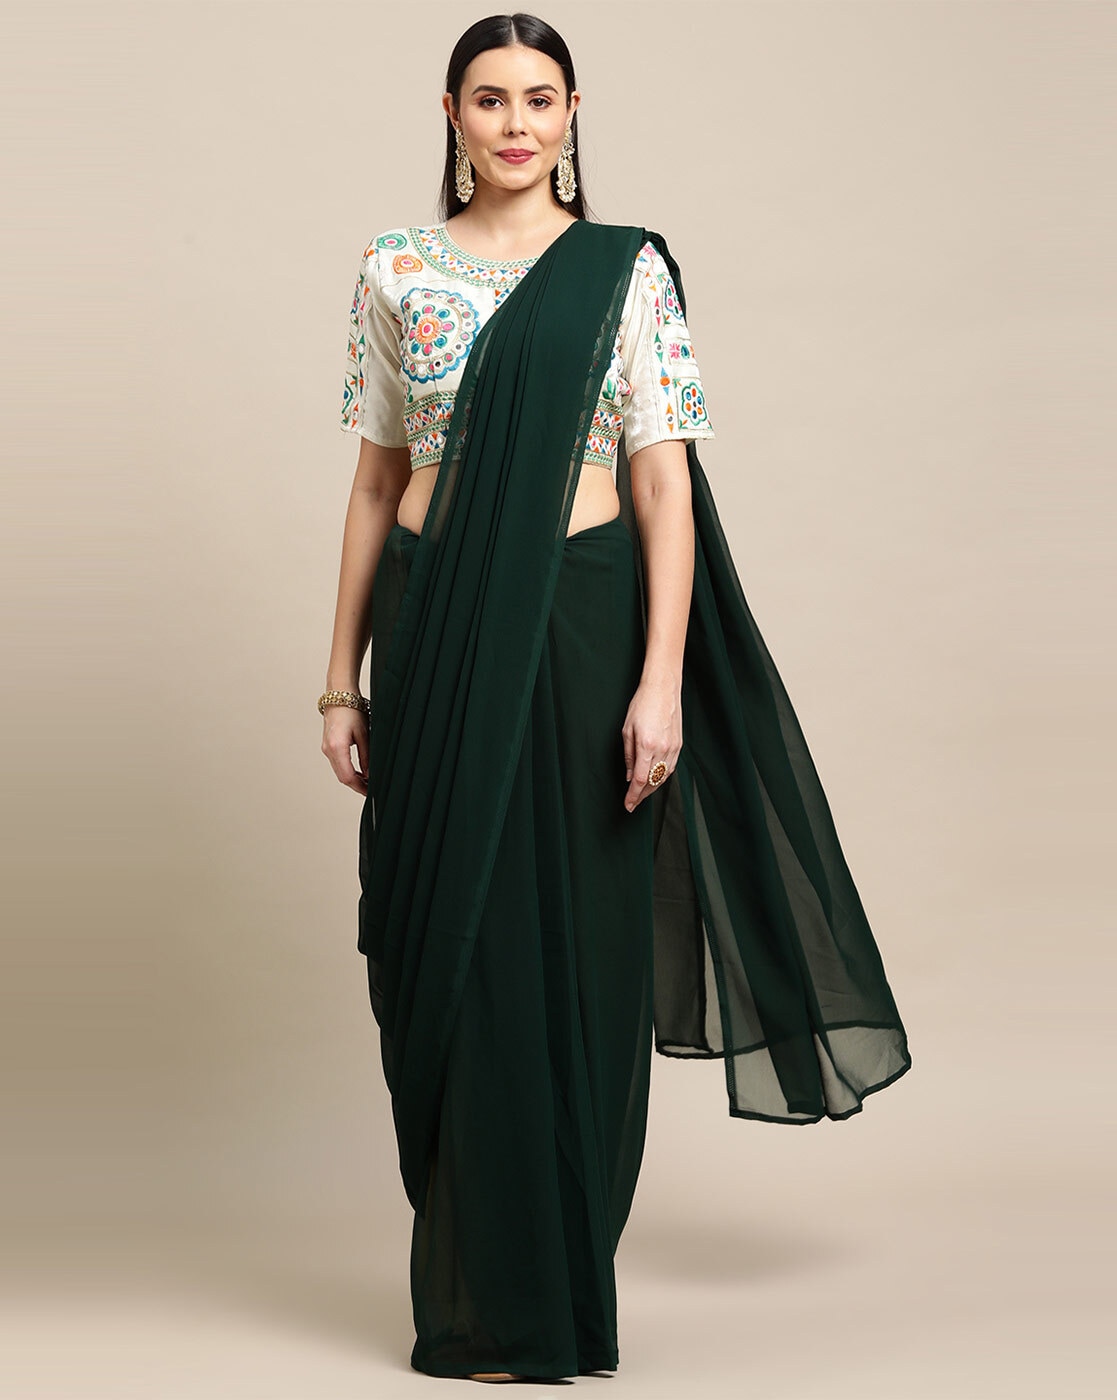 Where can I buy a plain saree? - Quora